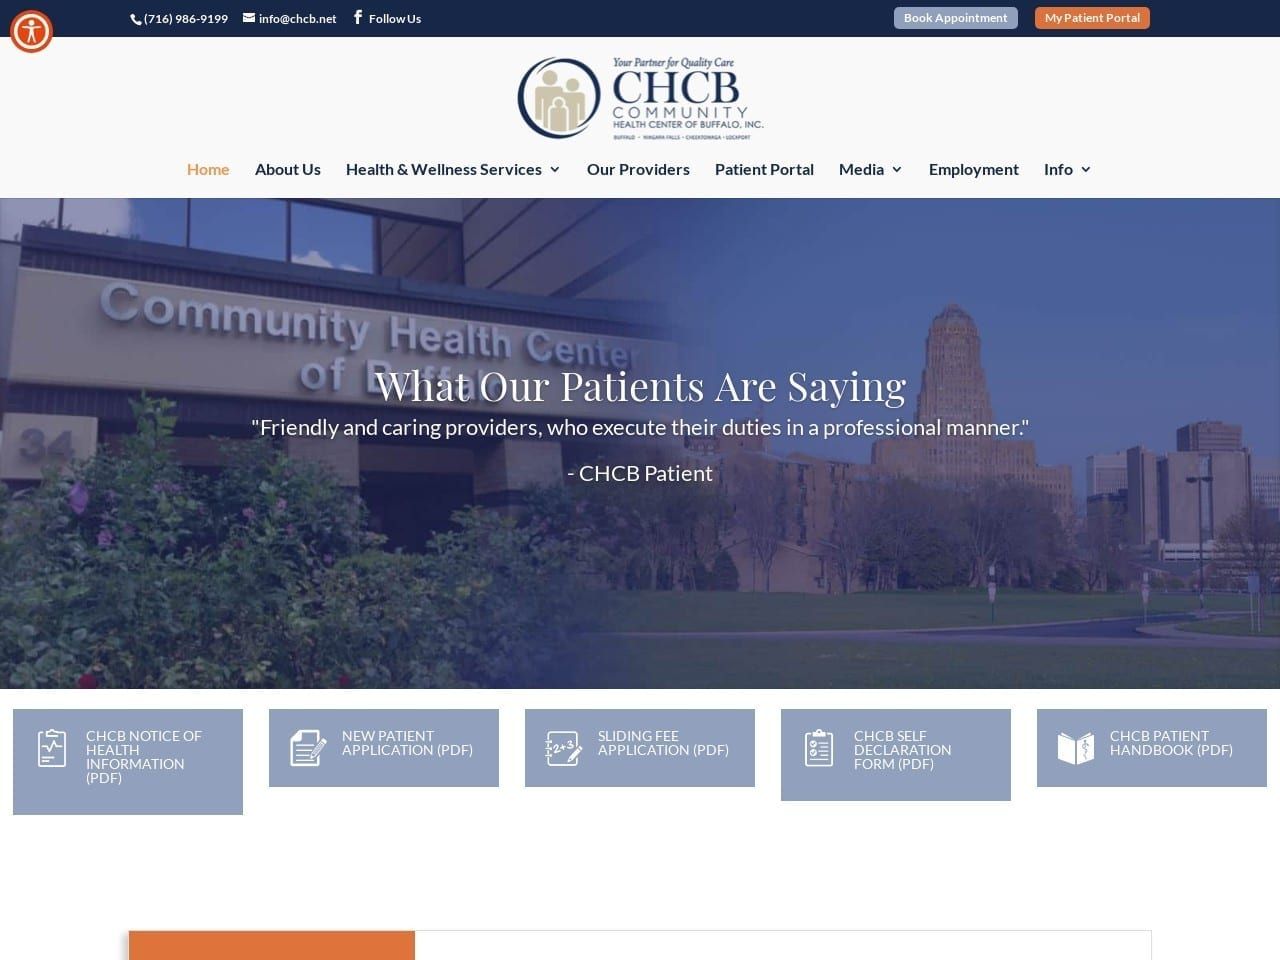 Community Health Center Website Screenshot from chcb.net